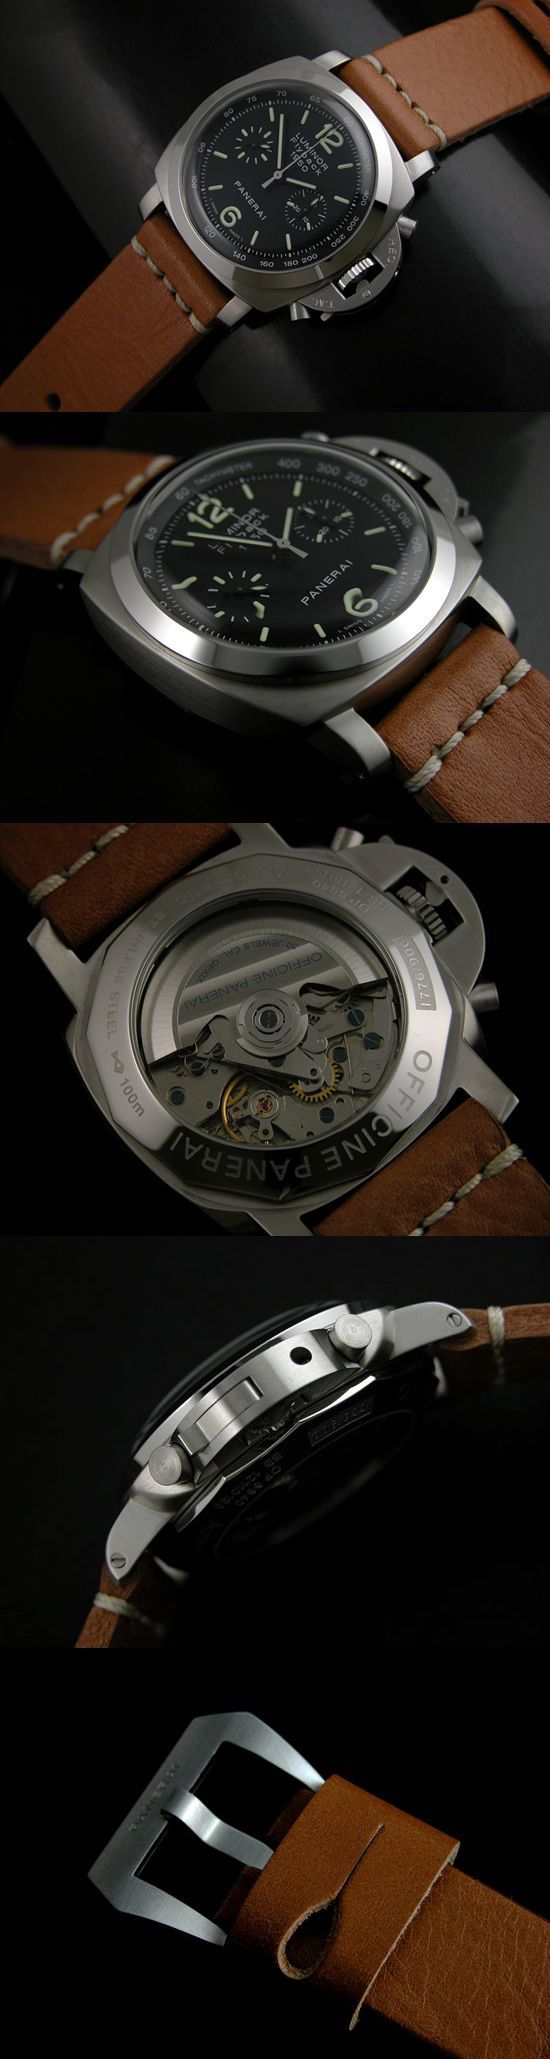 おしゃれなブランド時計がパネライ-ルミノール1950-PANERAI-PAM212-be-男性用を提供します.